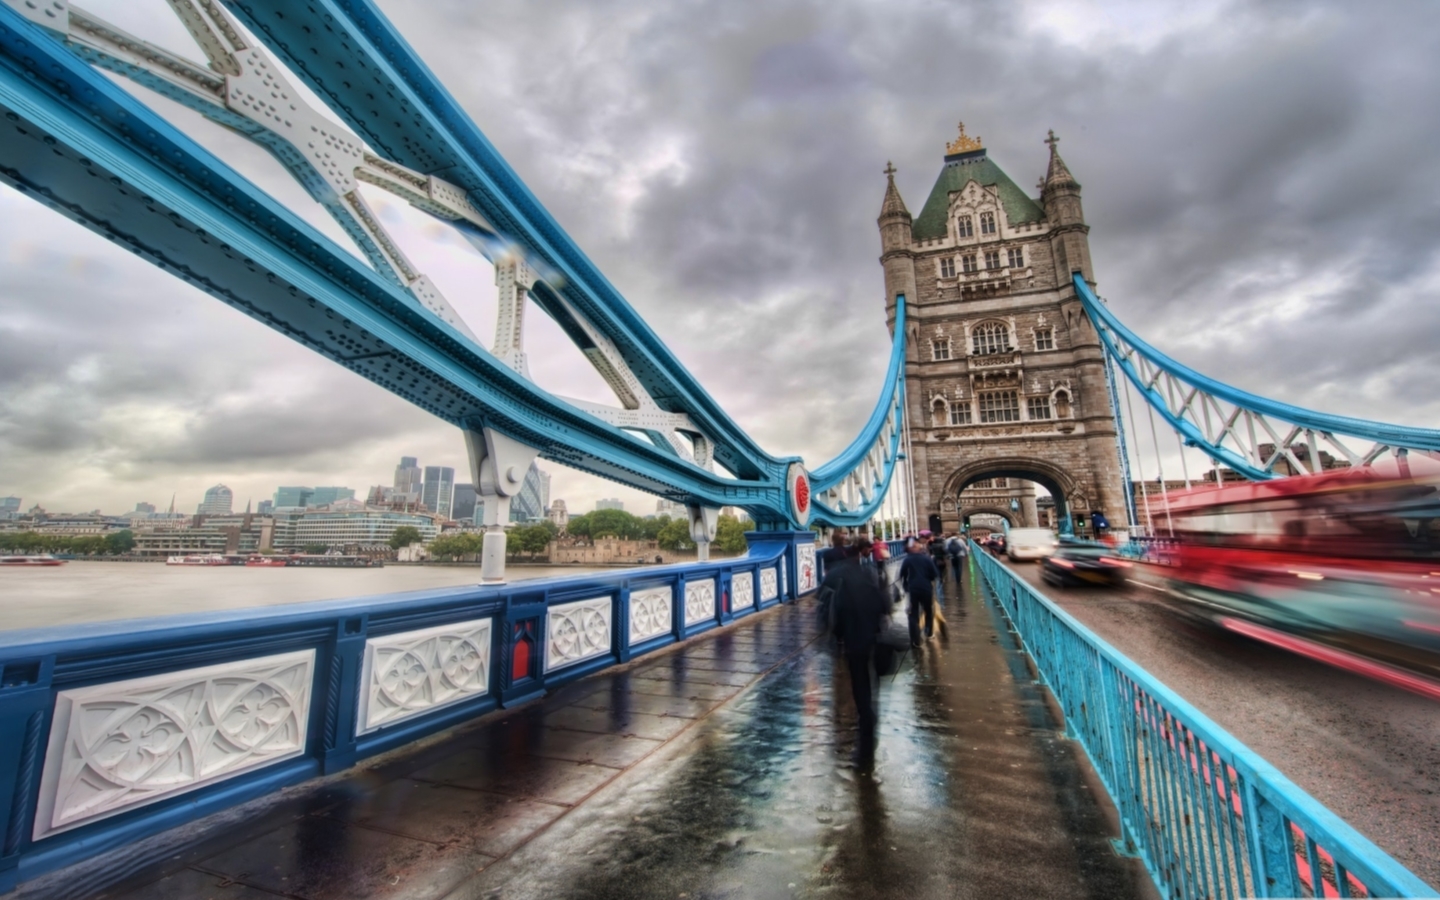 London Tower Bridge Mac Wallpaper Download Free Mac Wallpapers